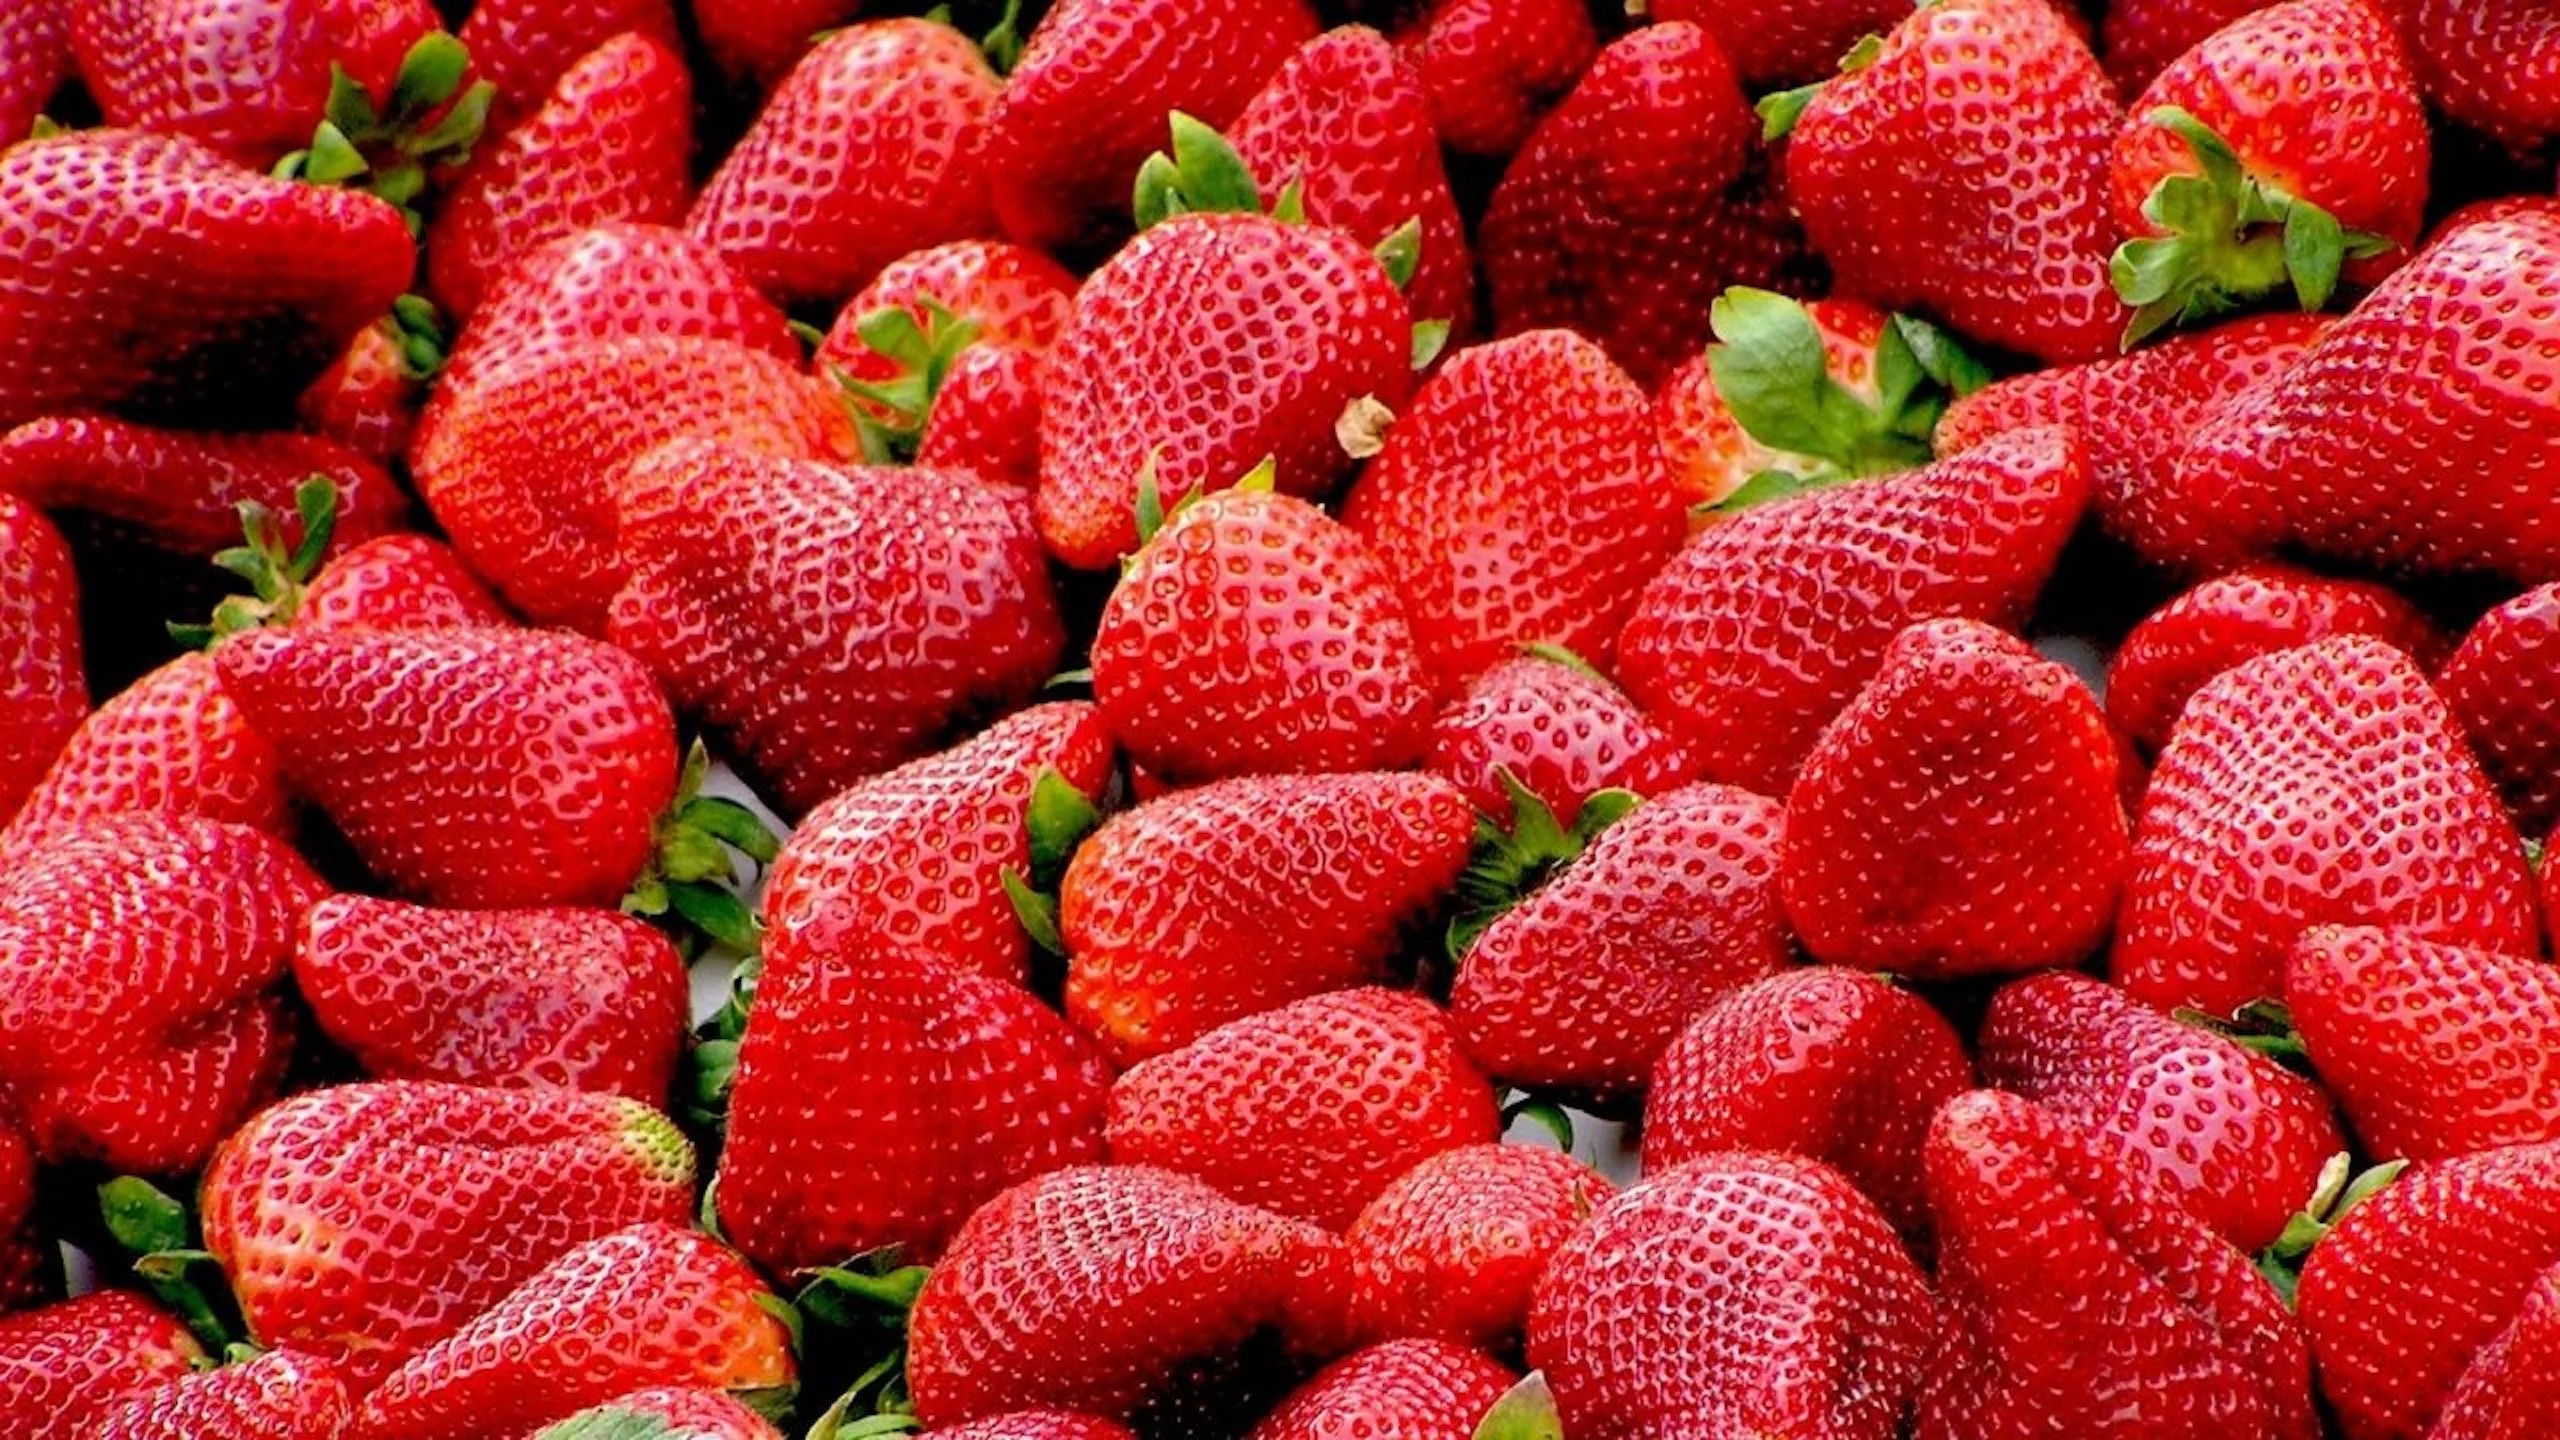 Buscan exportar berries mexicanas a Medio Oriente y Asia